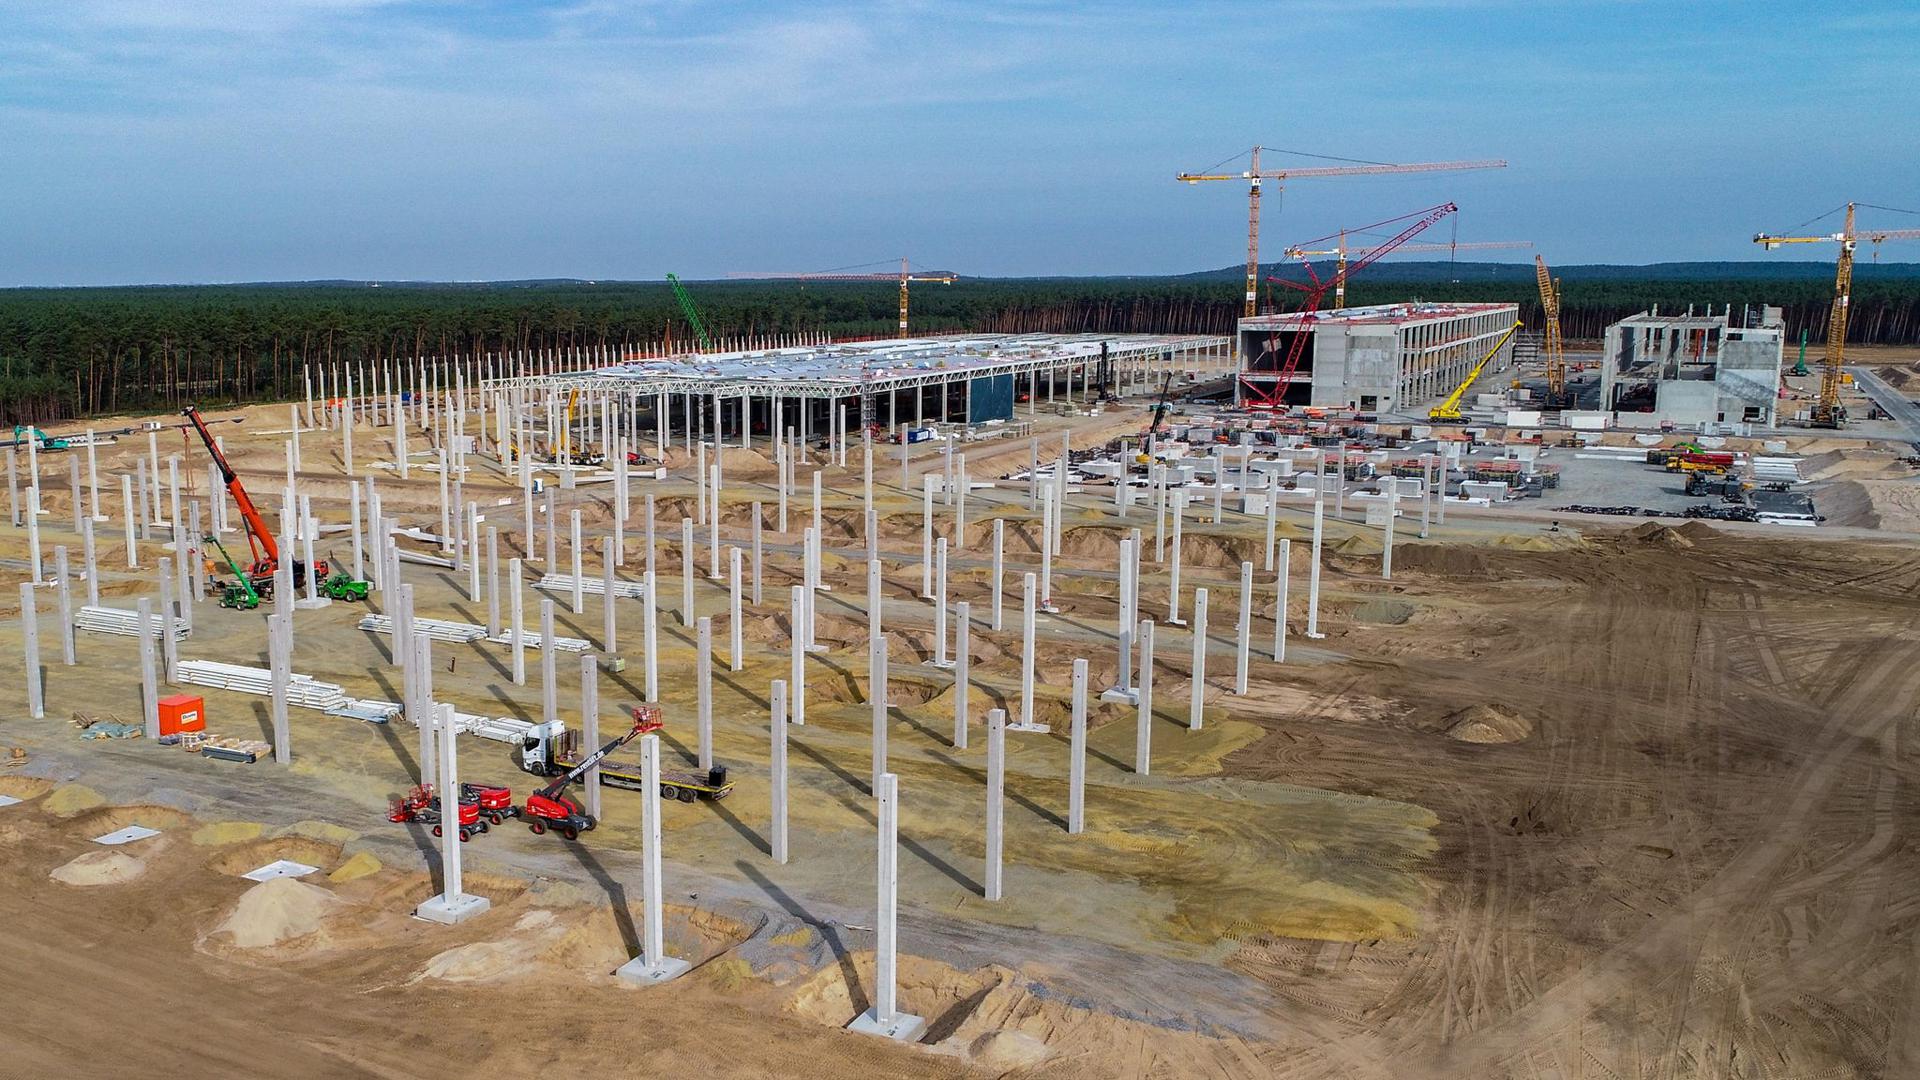 Wird bald mit Wasser versorgt werden können: Die Baustelle der Giga-Factory von Tesla in Brandenburg.